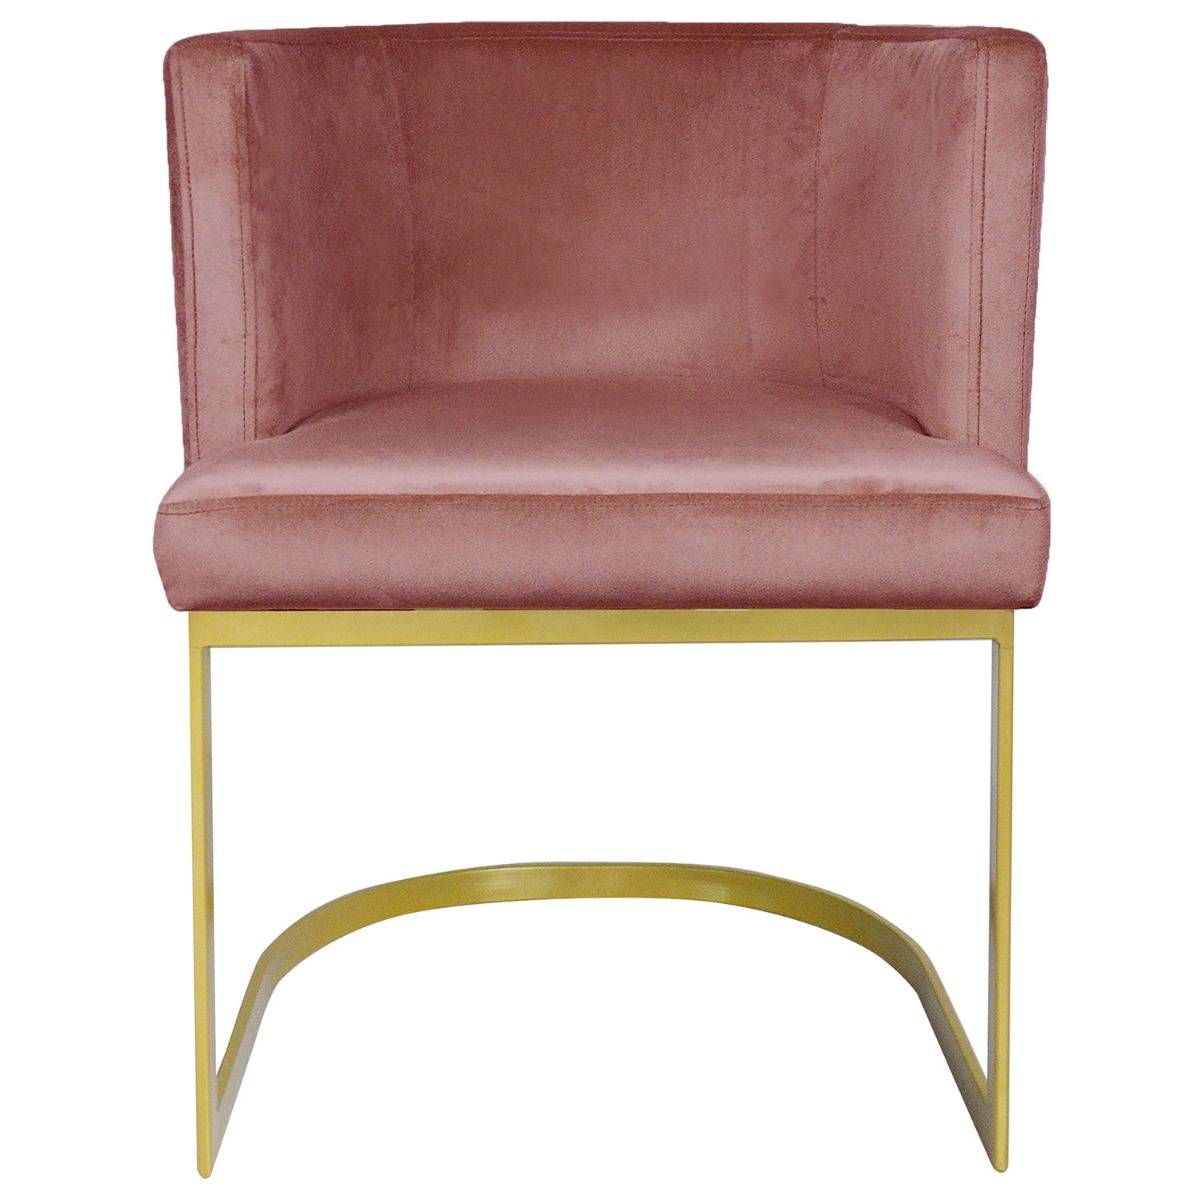 Chaise rose matelassée simili cuir rose / Pieds métal rose pour